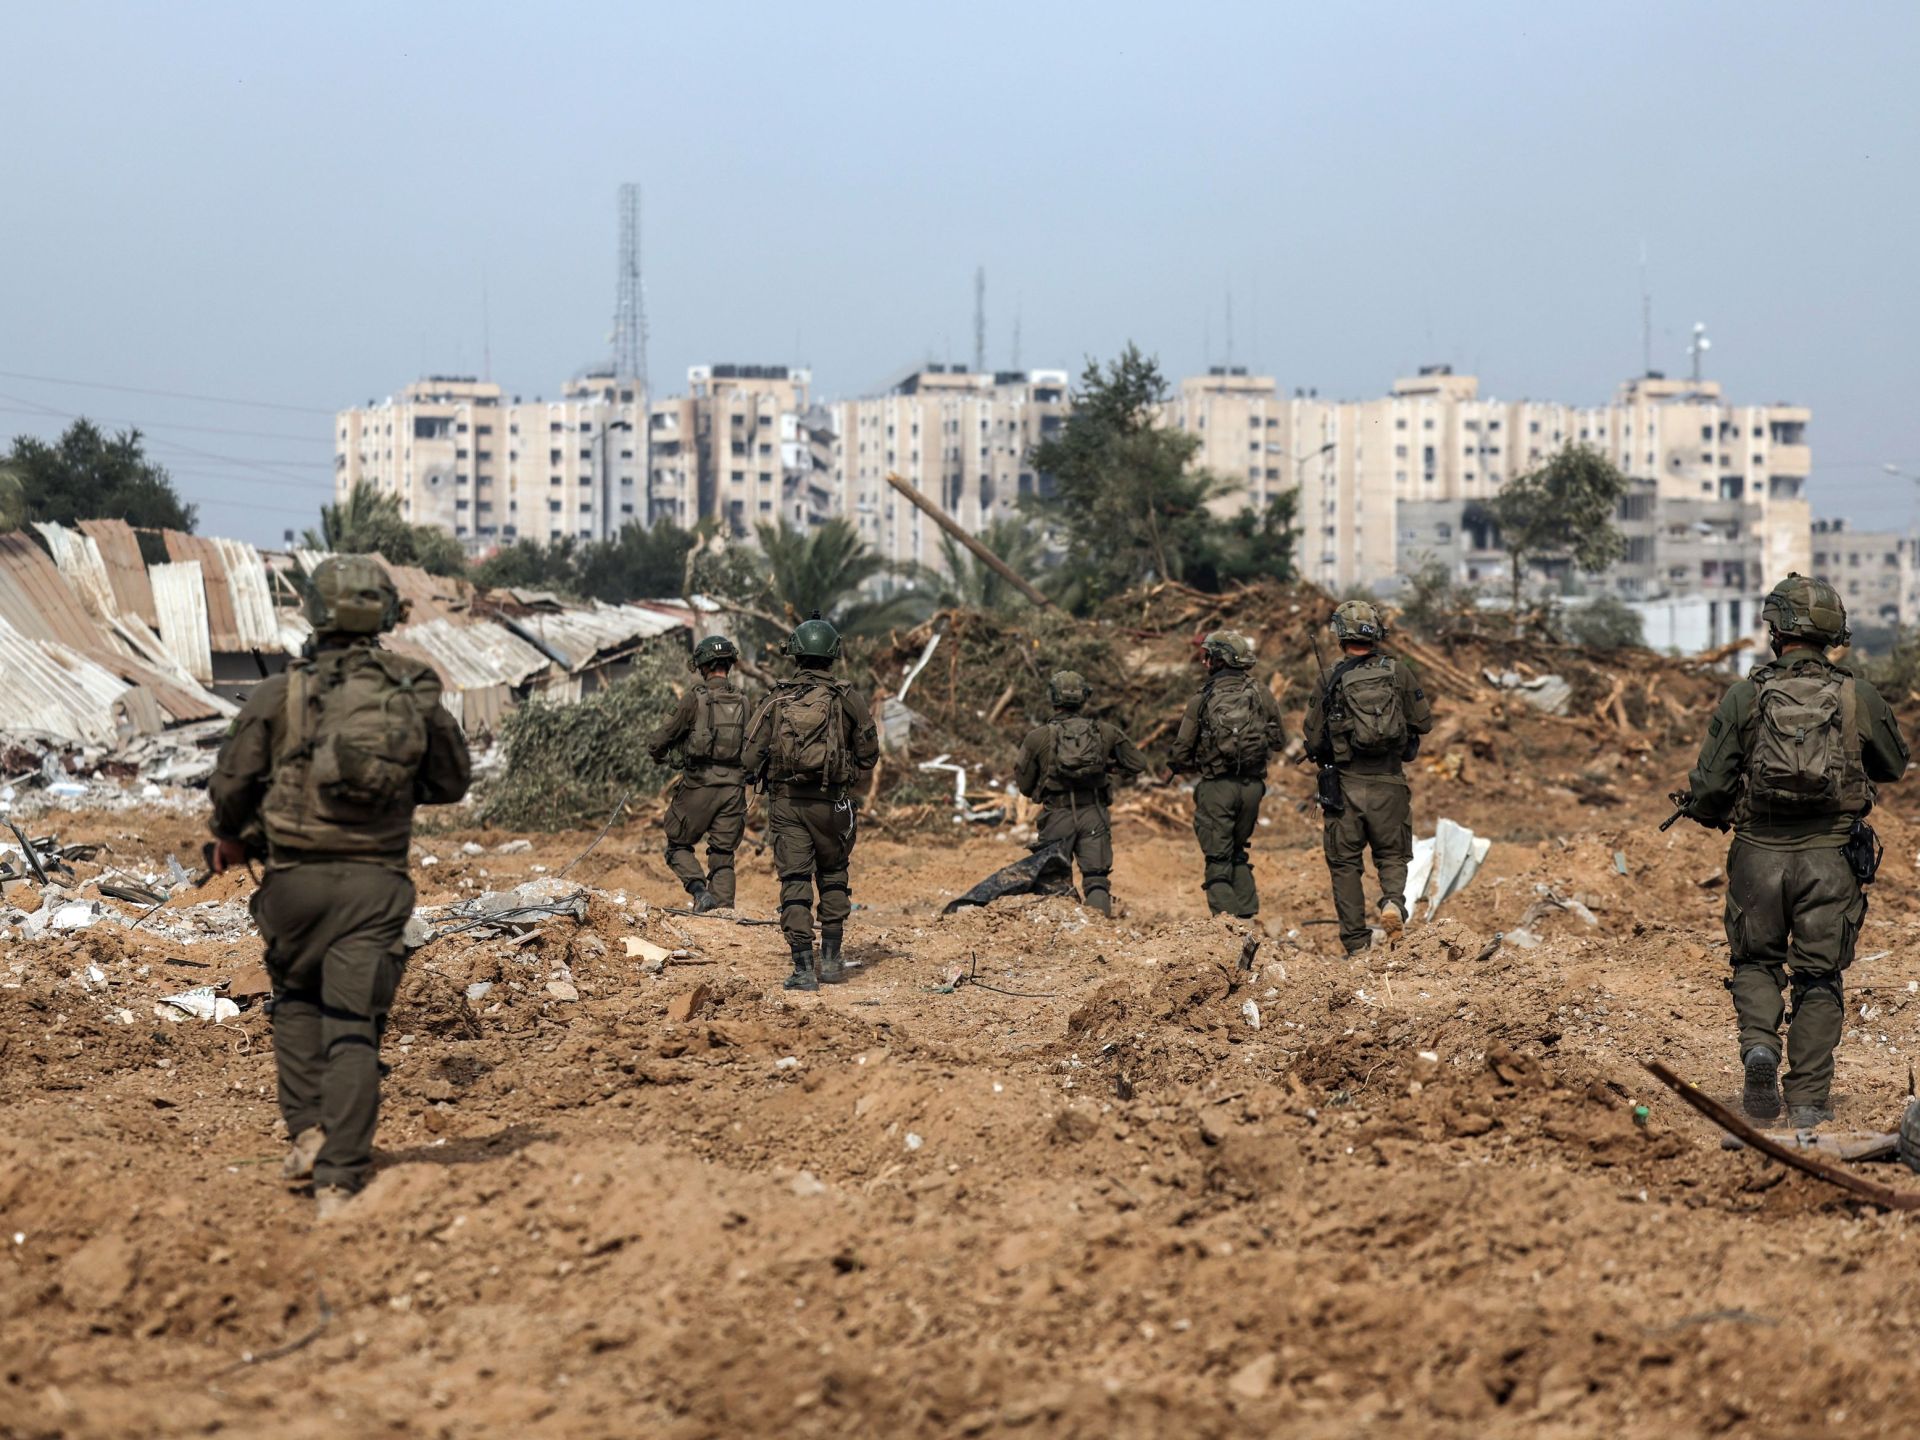 ميديا بارت: أموال عامة فرنسية تقدَّم للجيش الإسرائيلي | أخبار سياسة – البوكس نيوز